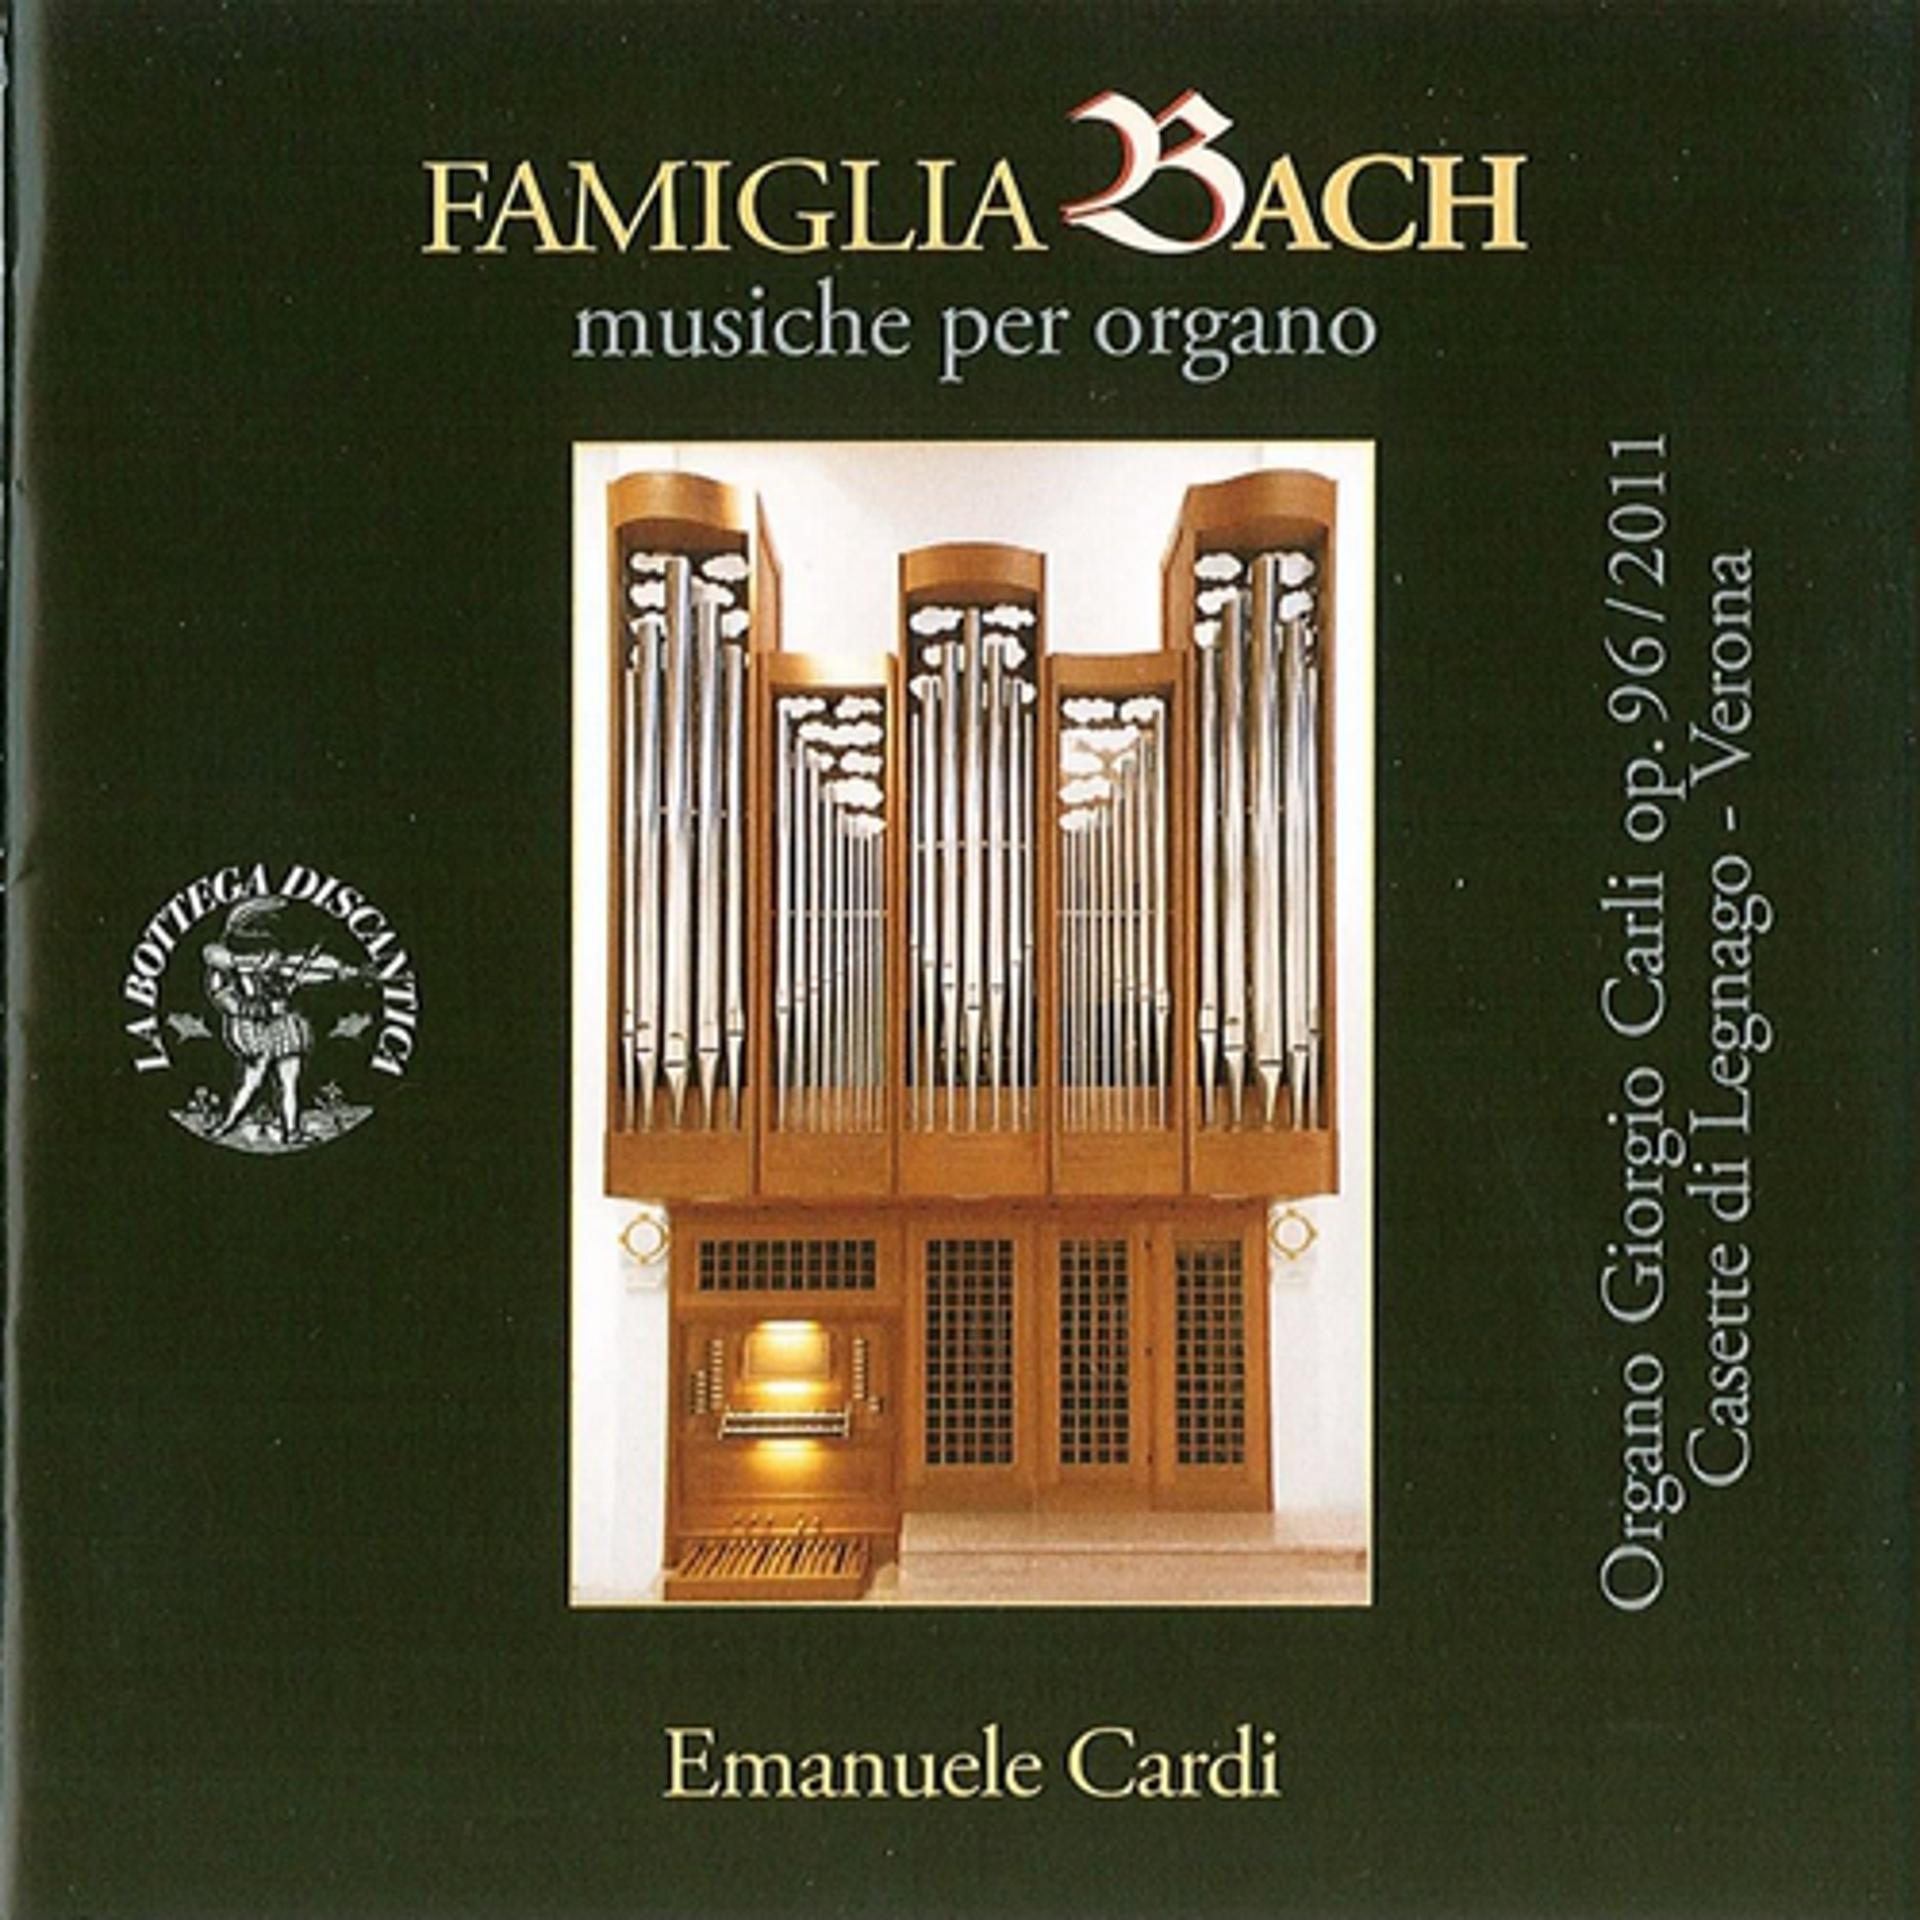 Постер альбома Famiglia bach: Musiche per organo - organo giorgio carli, op. 96 (2001) casette di legnago, verona